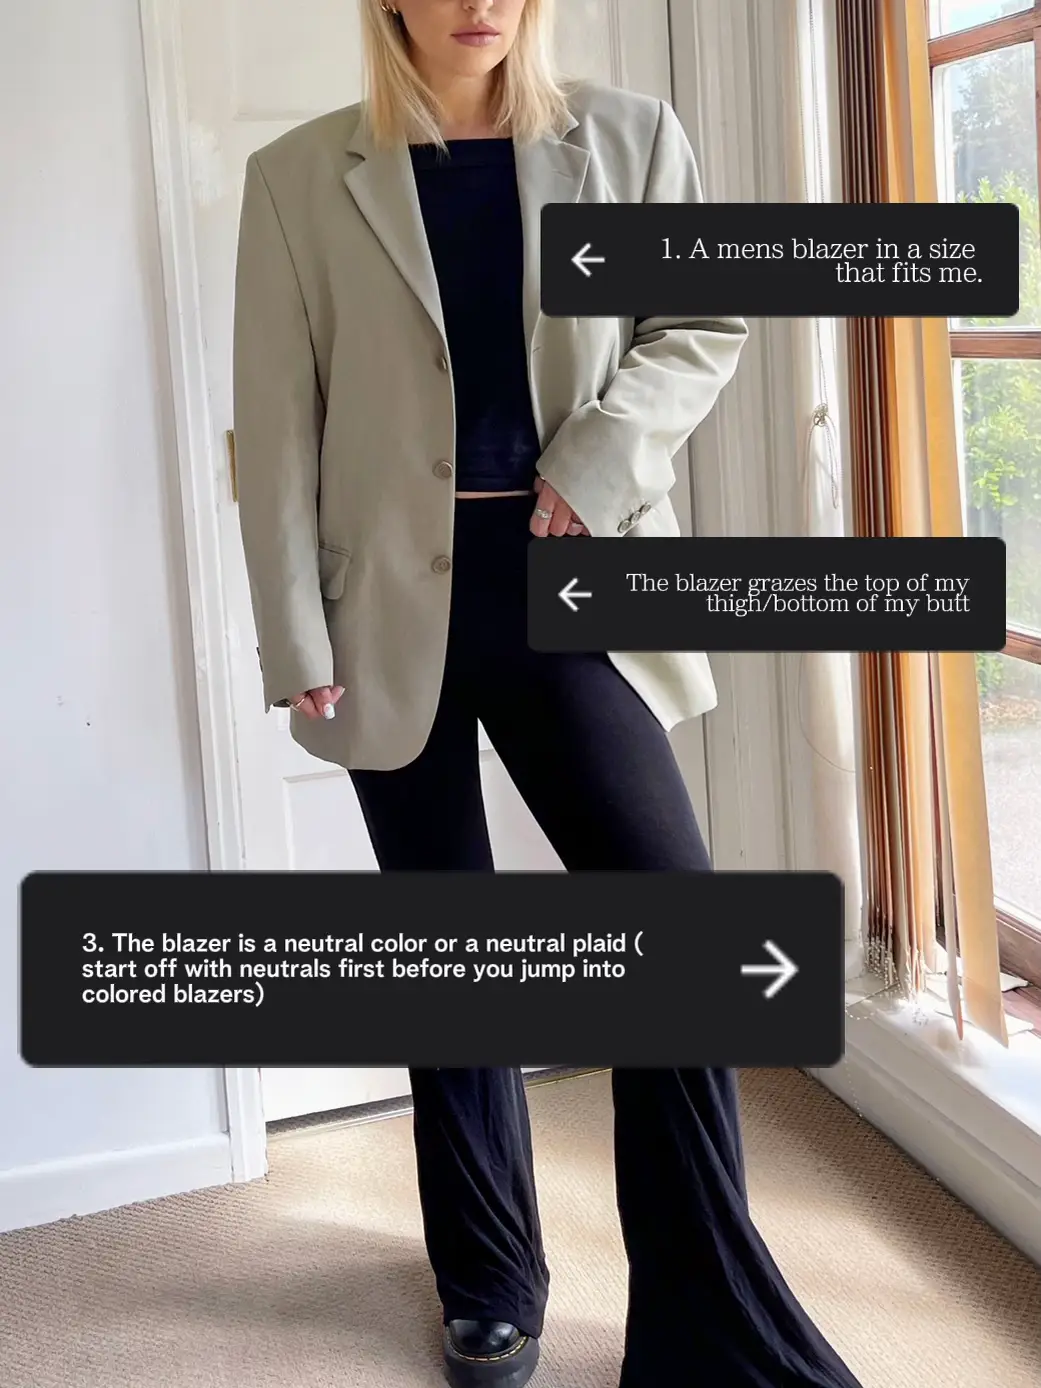 how to wear men's blazers for women - Lemon8 Search